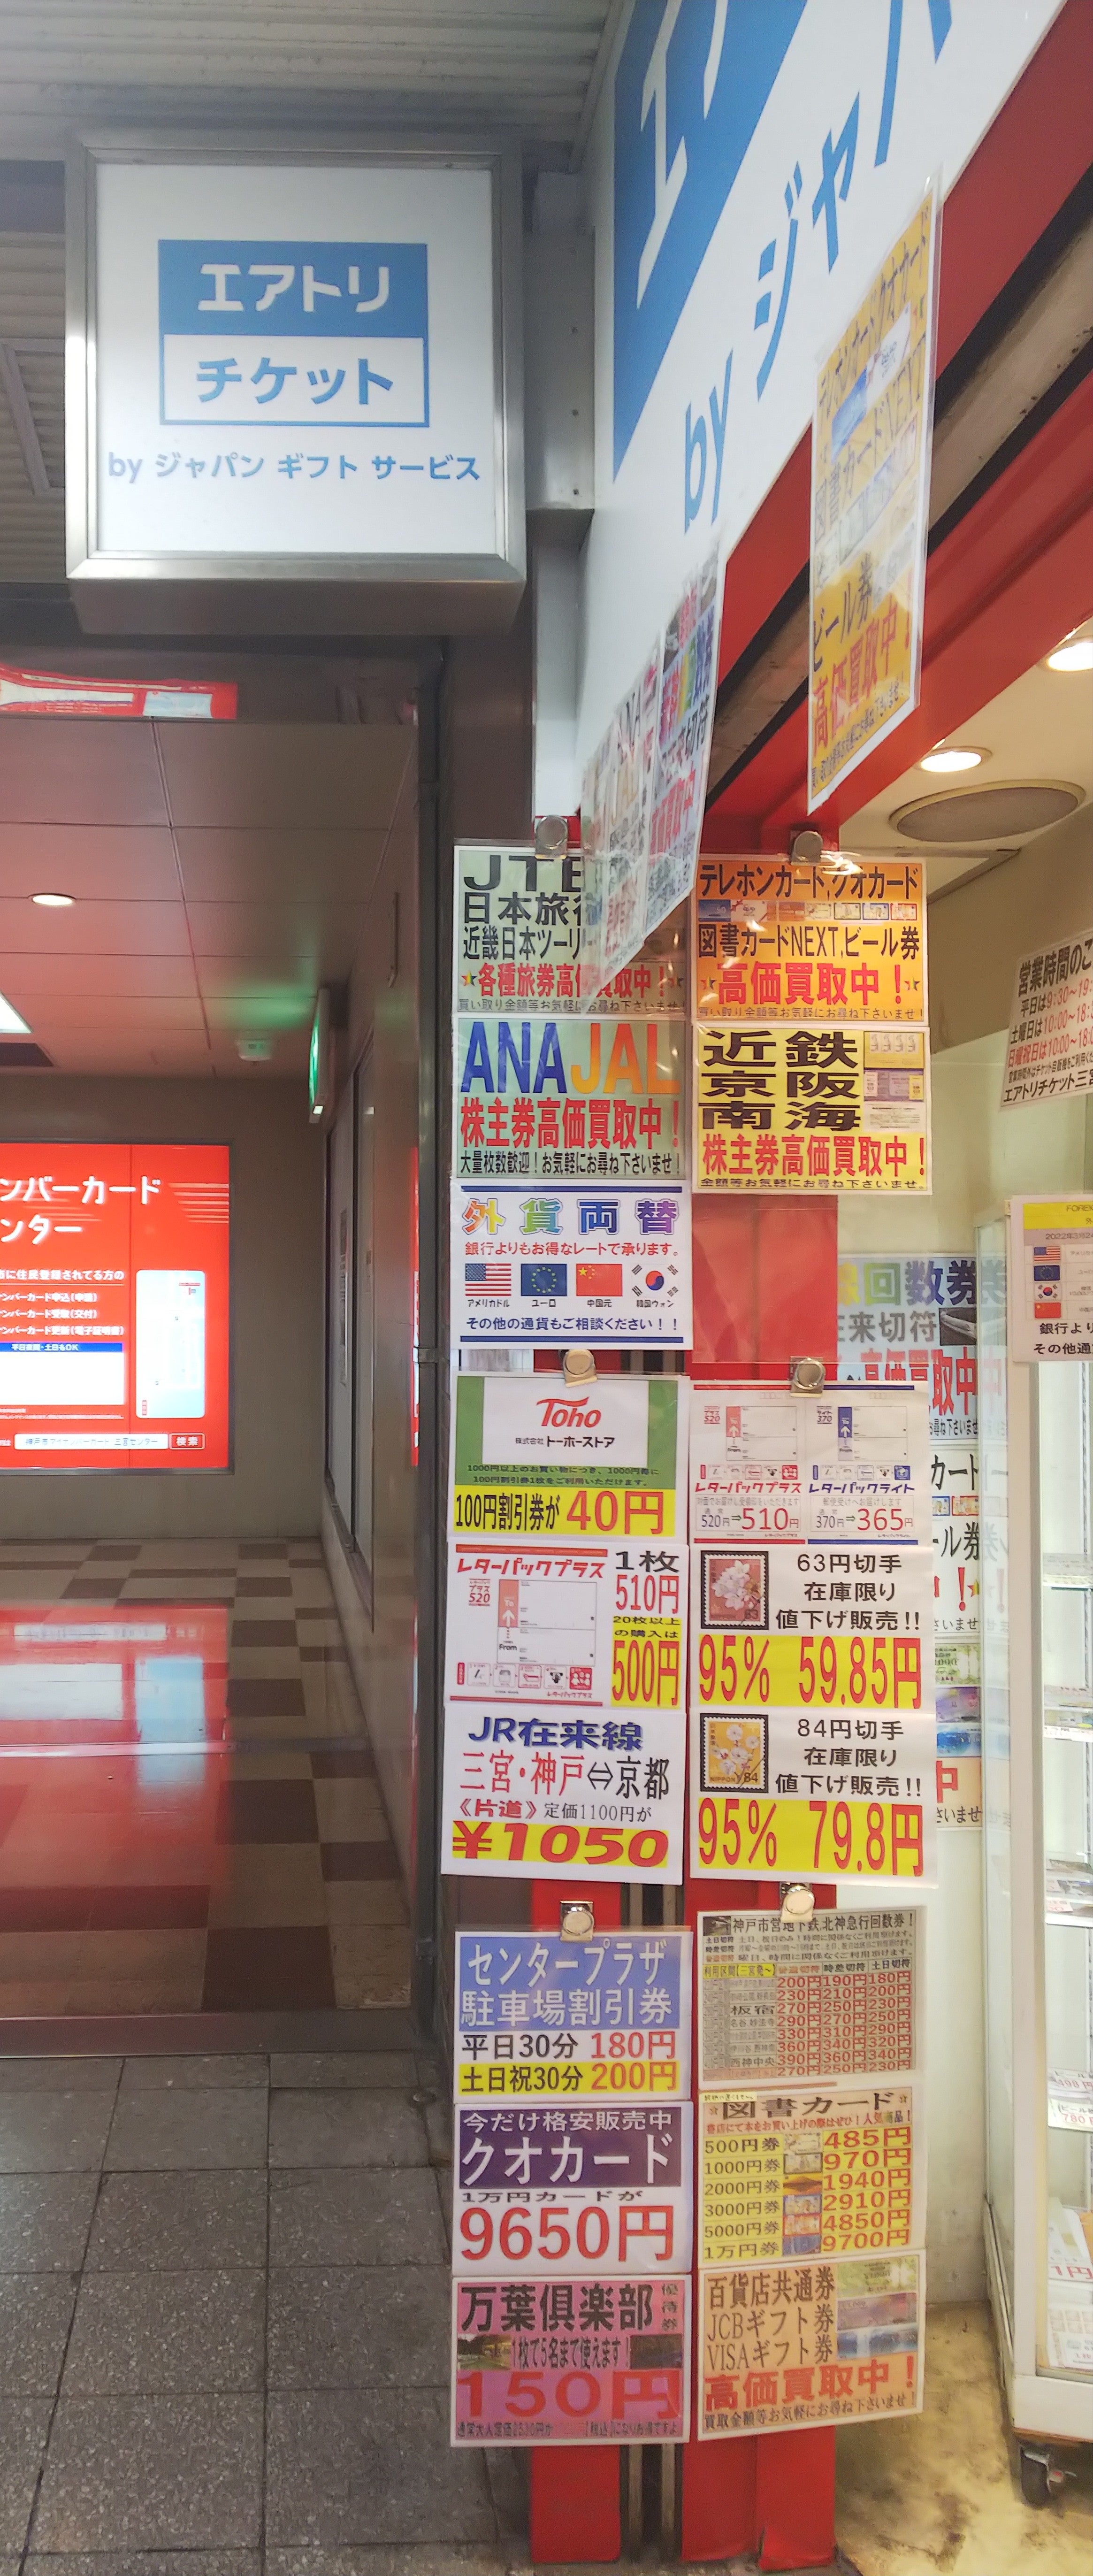 ジャパンギフトサービス神戸店のメニューの写真